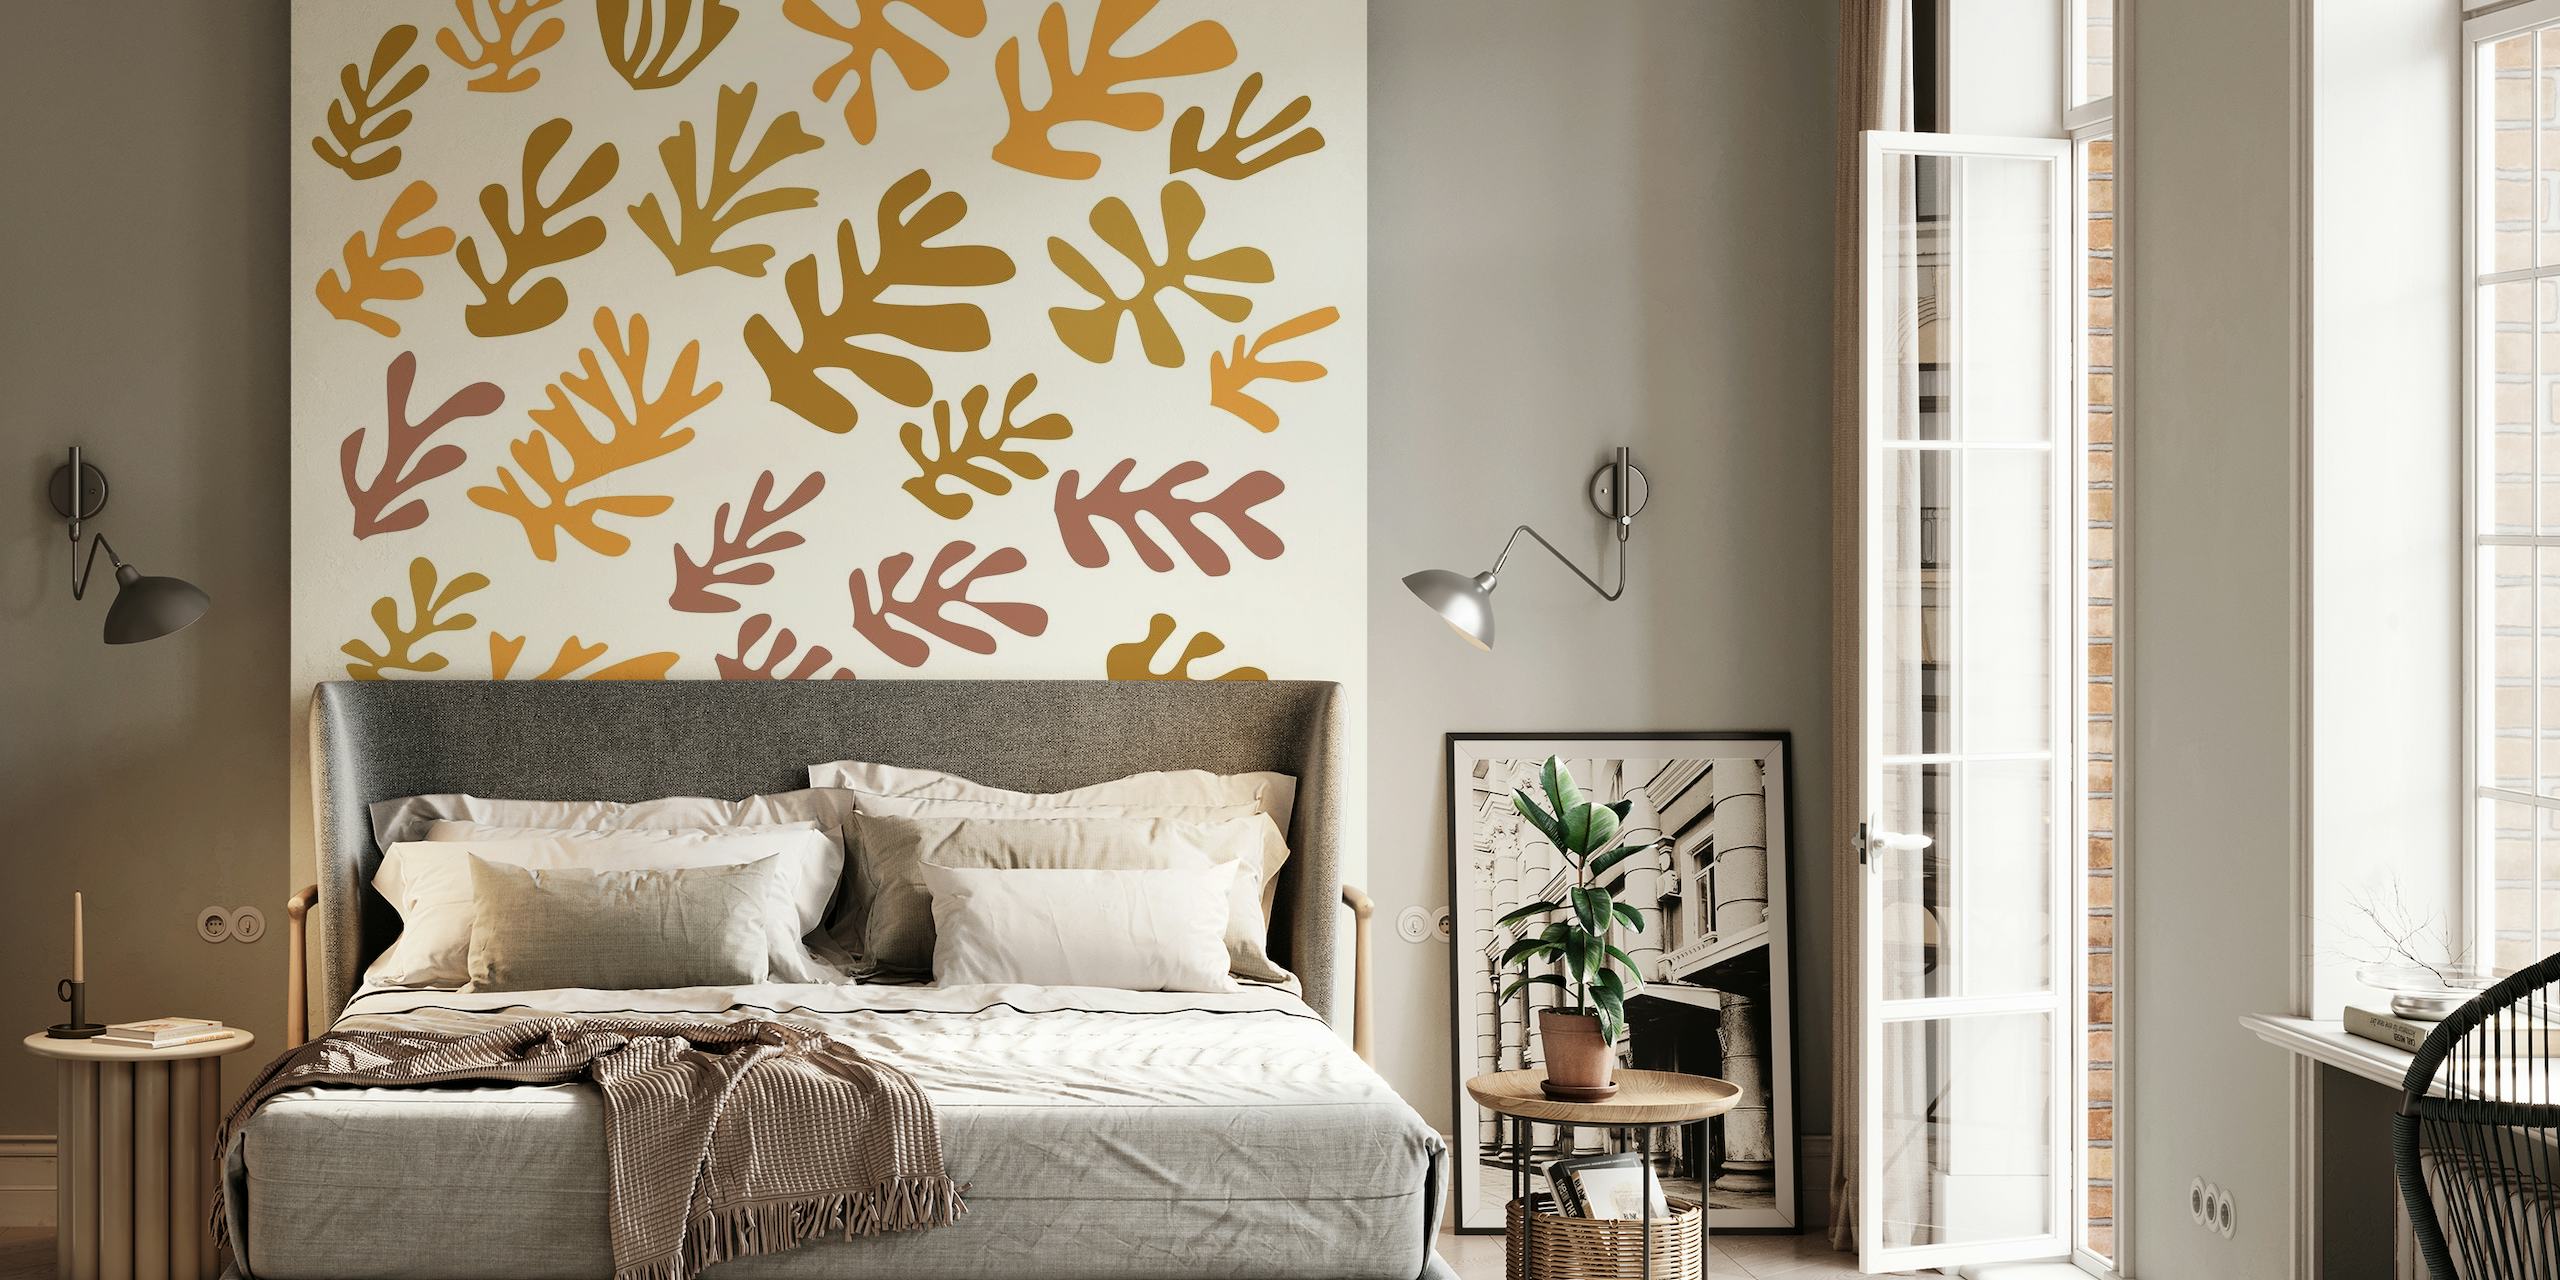 Matisse Inspired Warm Leaves behang